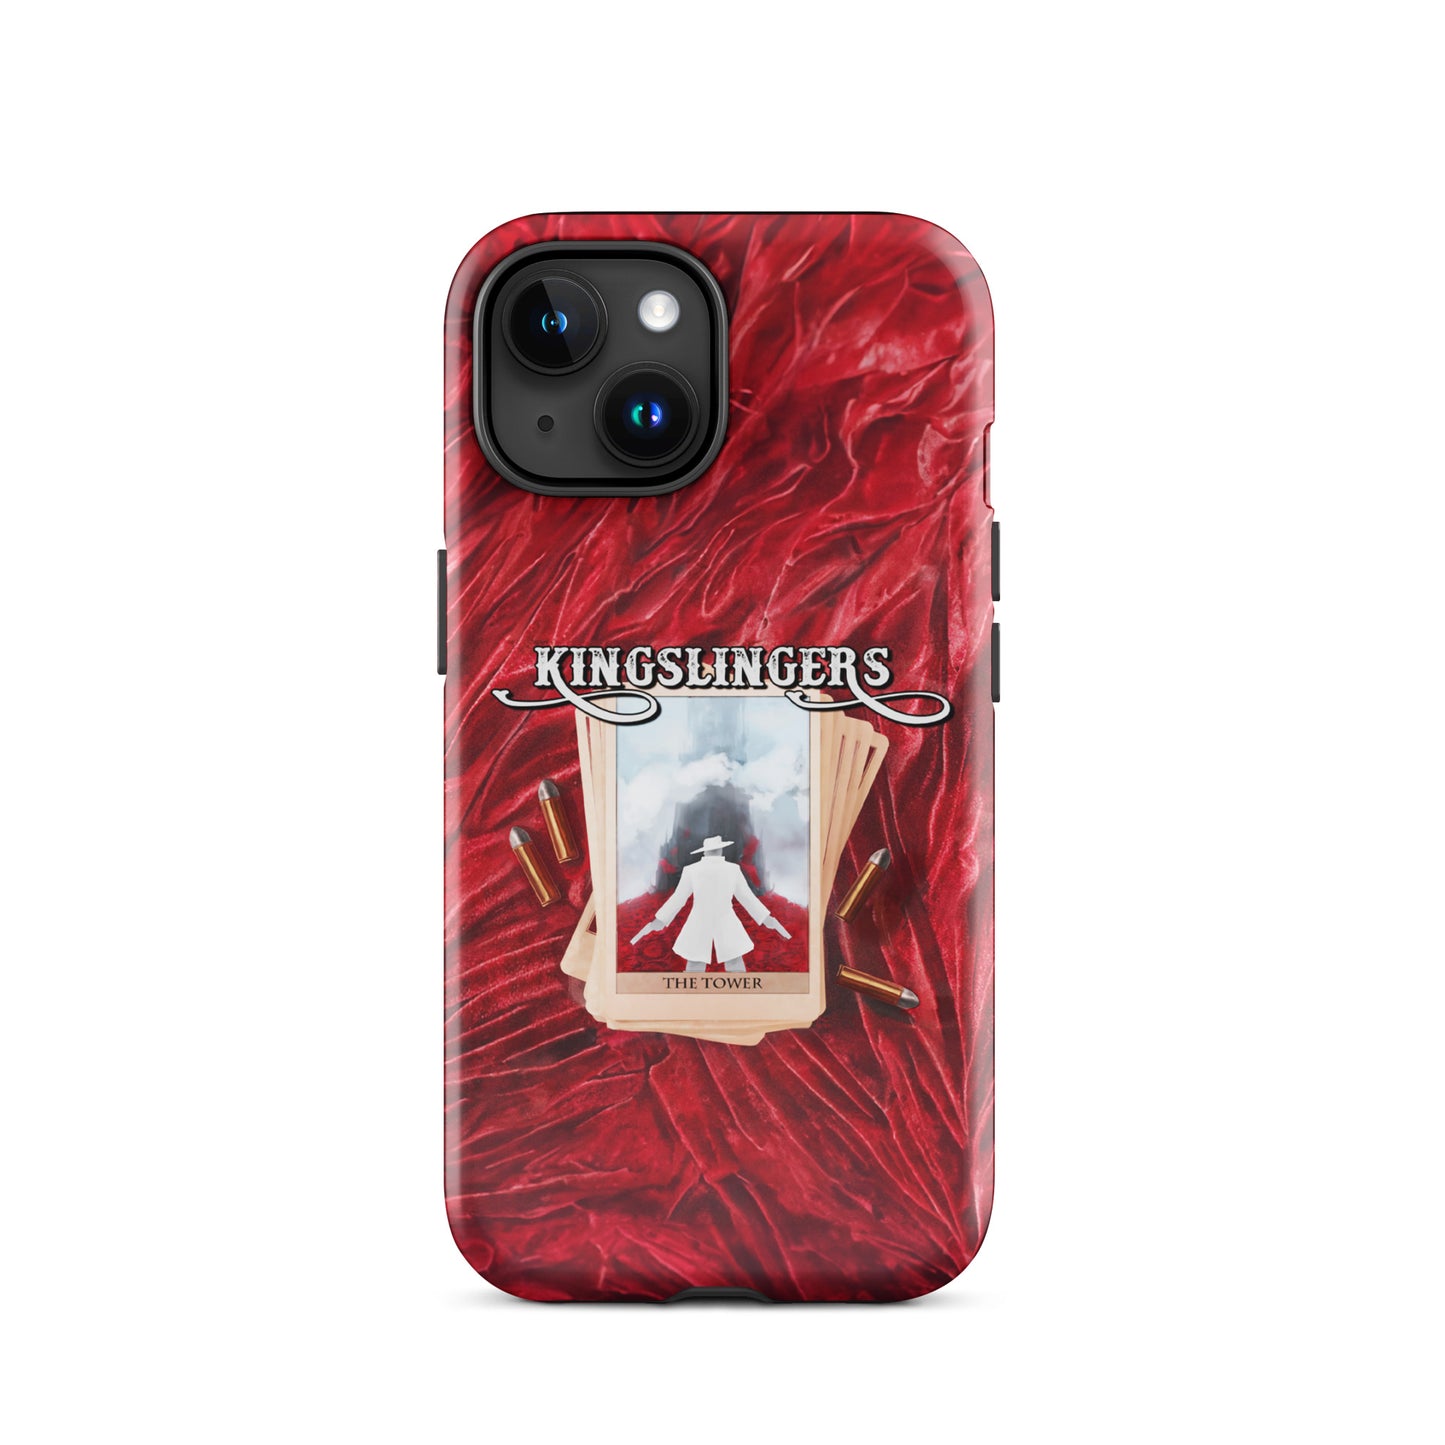 Kingslinger Tarot Card iPhone Tough Case